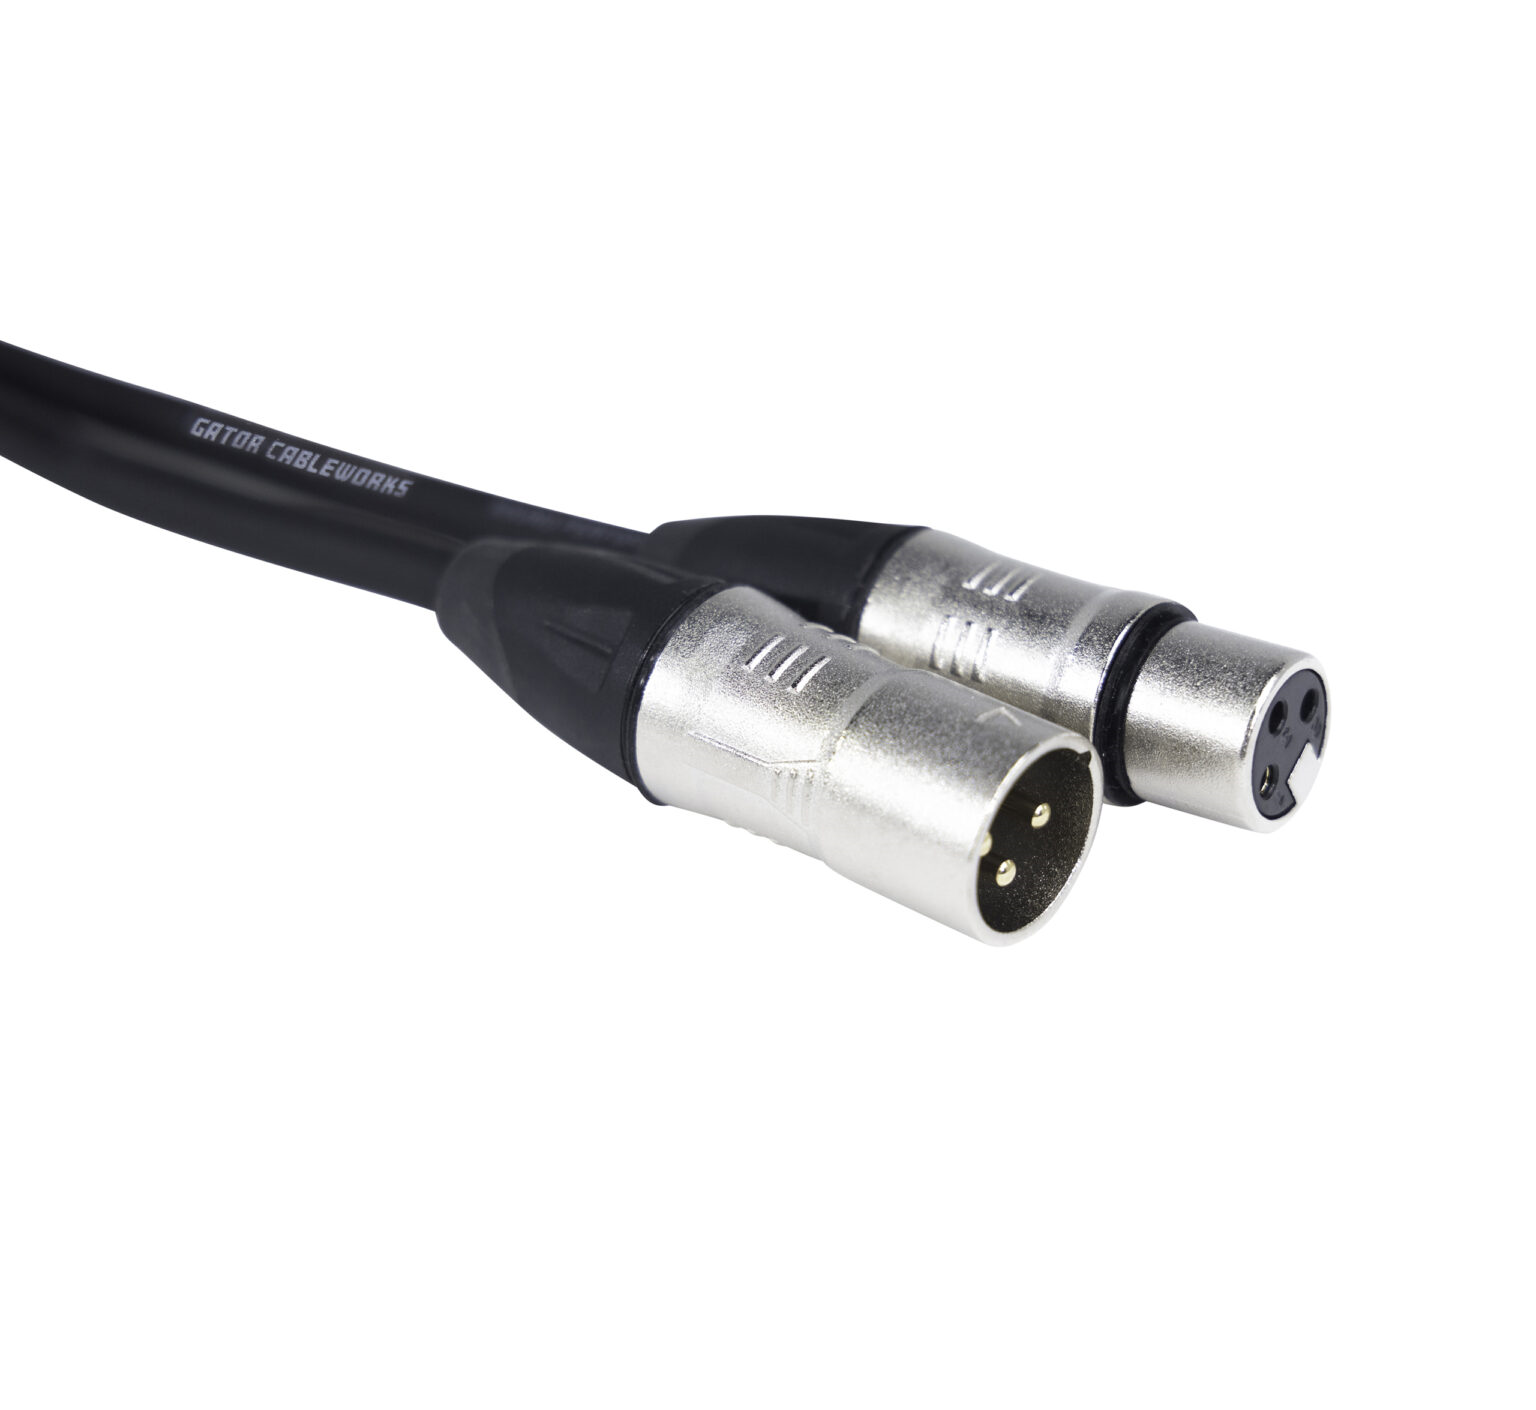 GCWB-XLR-10 10 Foot XLR Microphone Cable